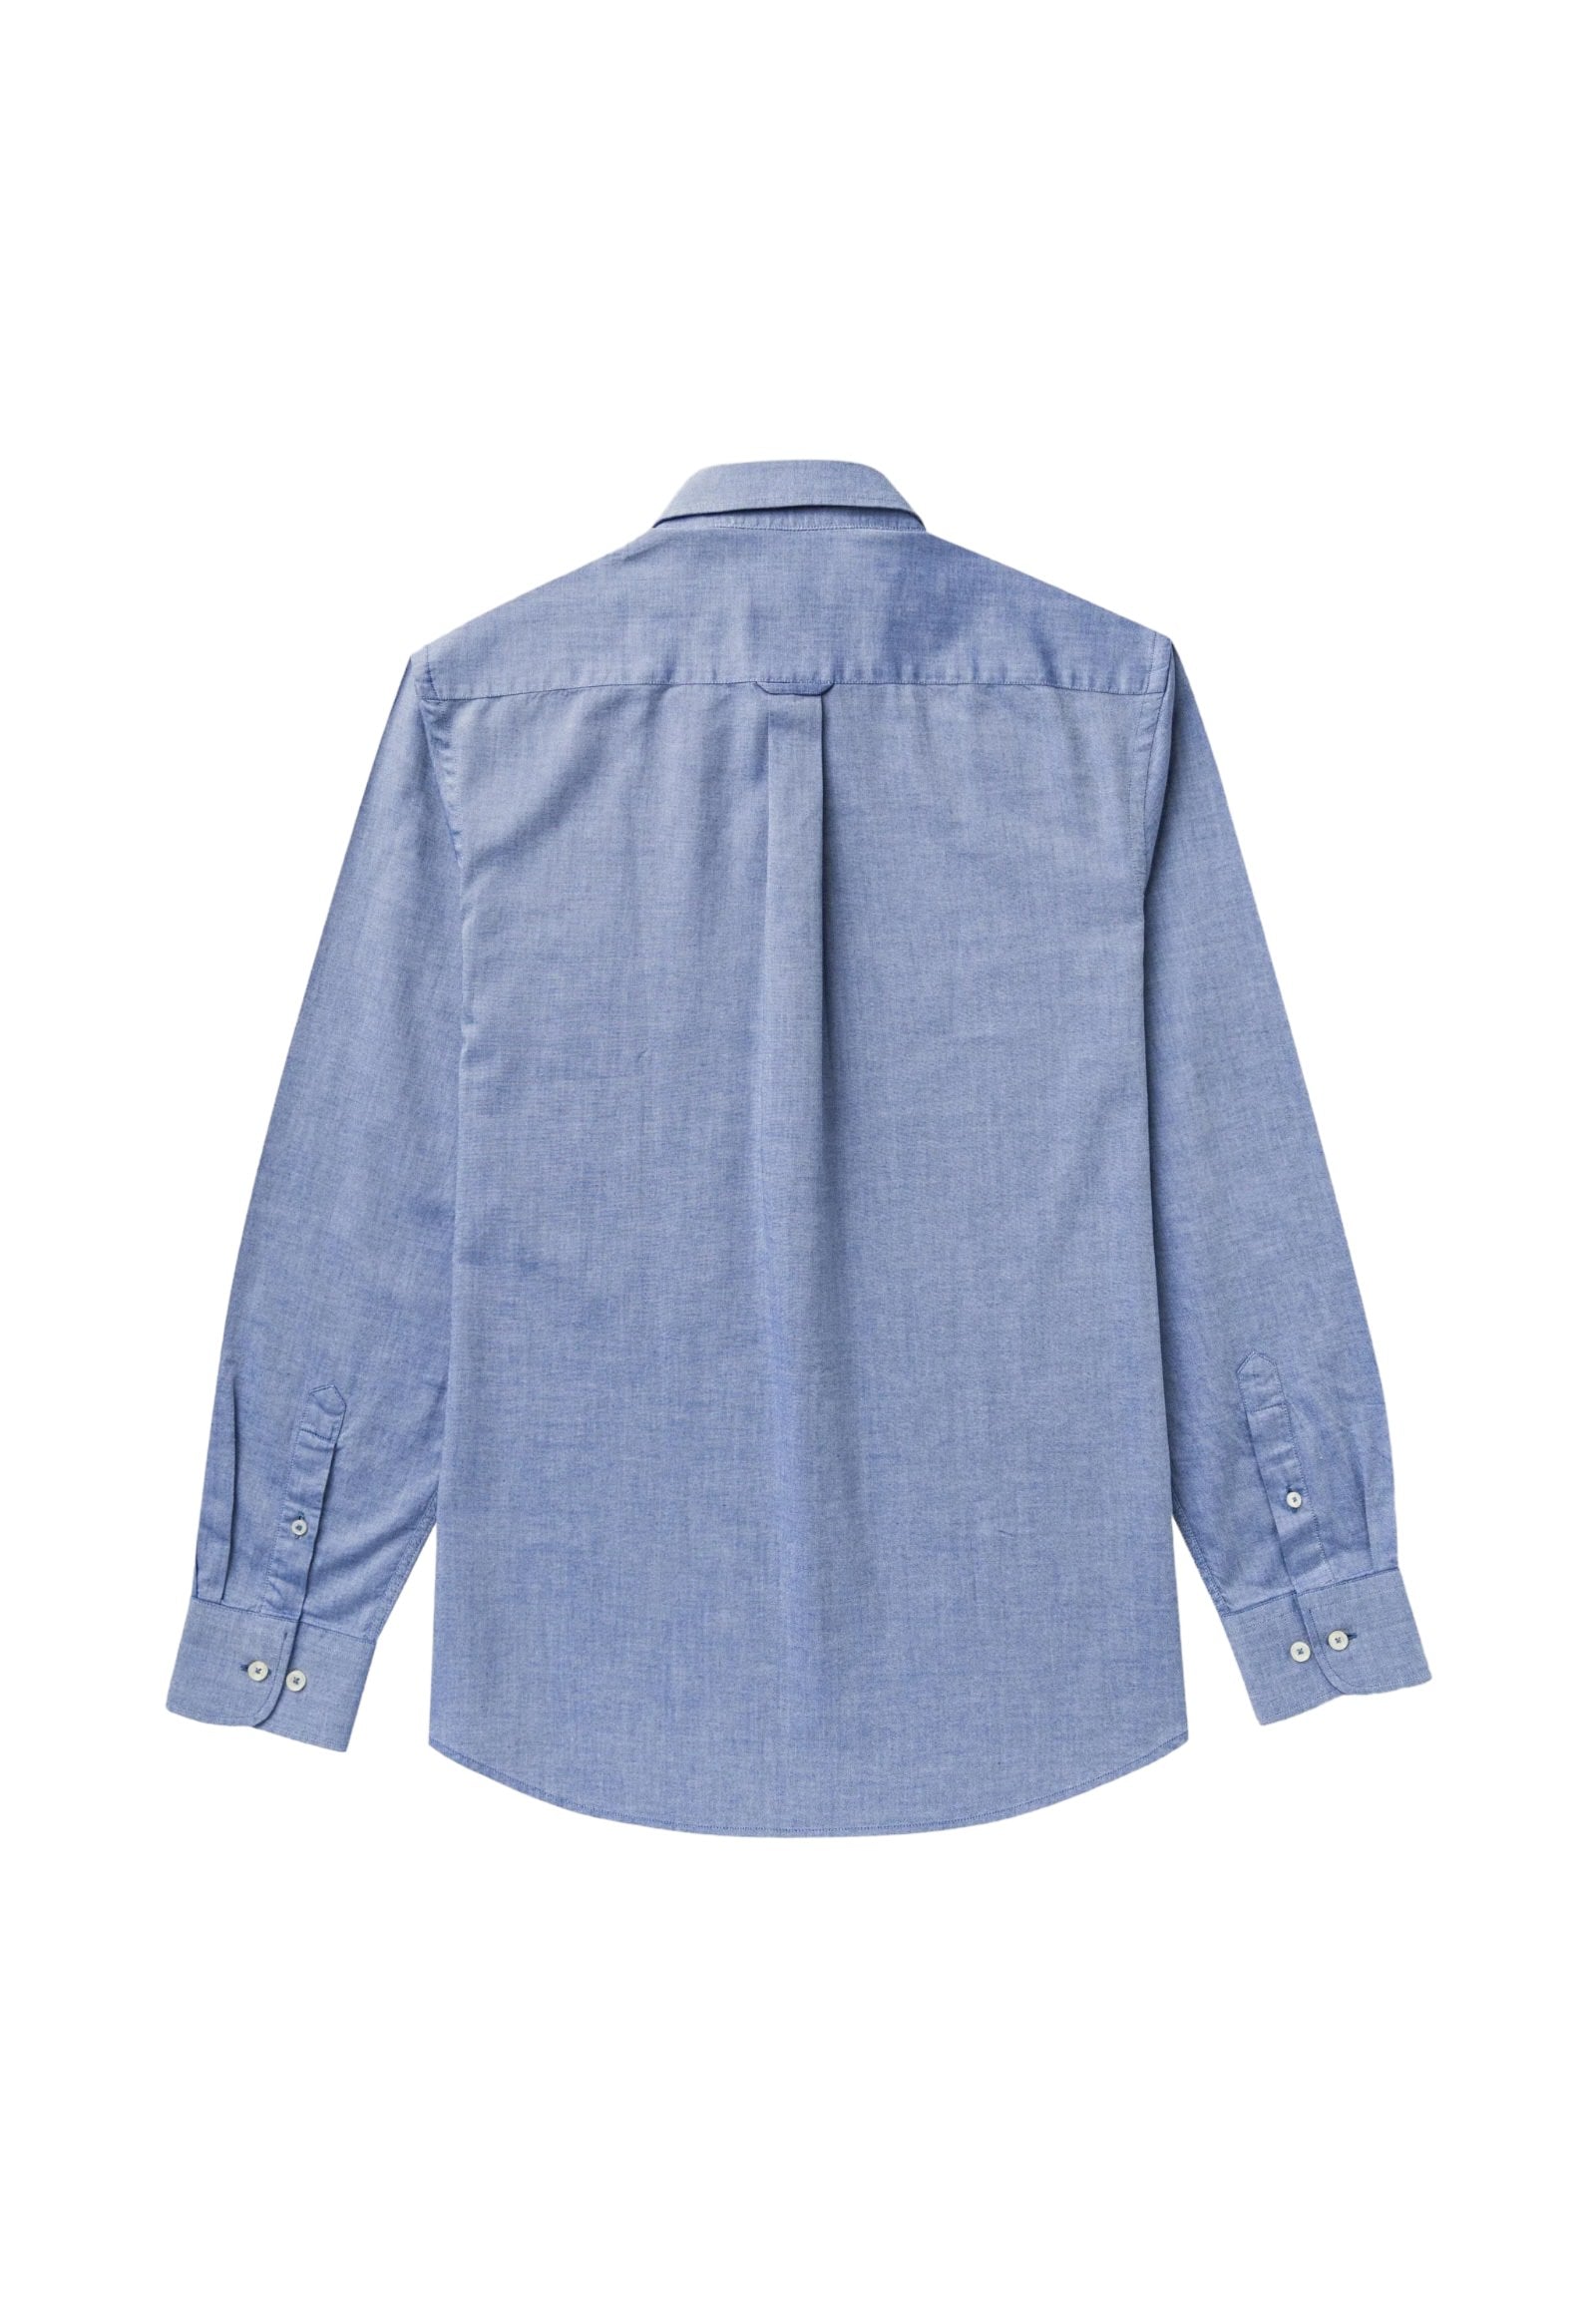 Long Sleeve Shirt 10msh201-02604 Navy Blue